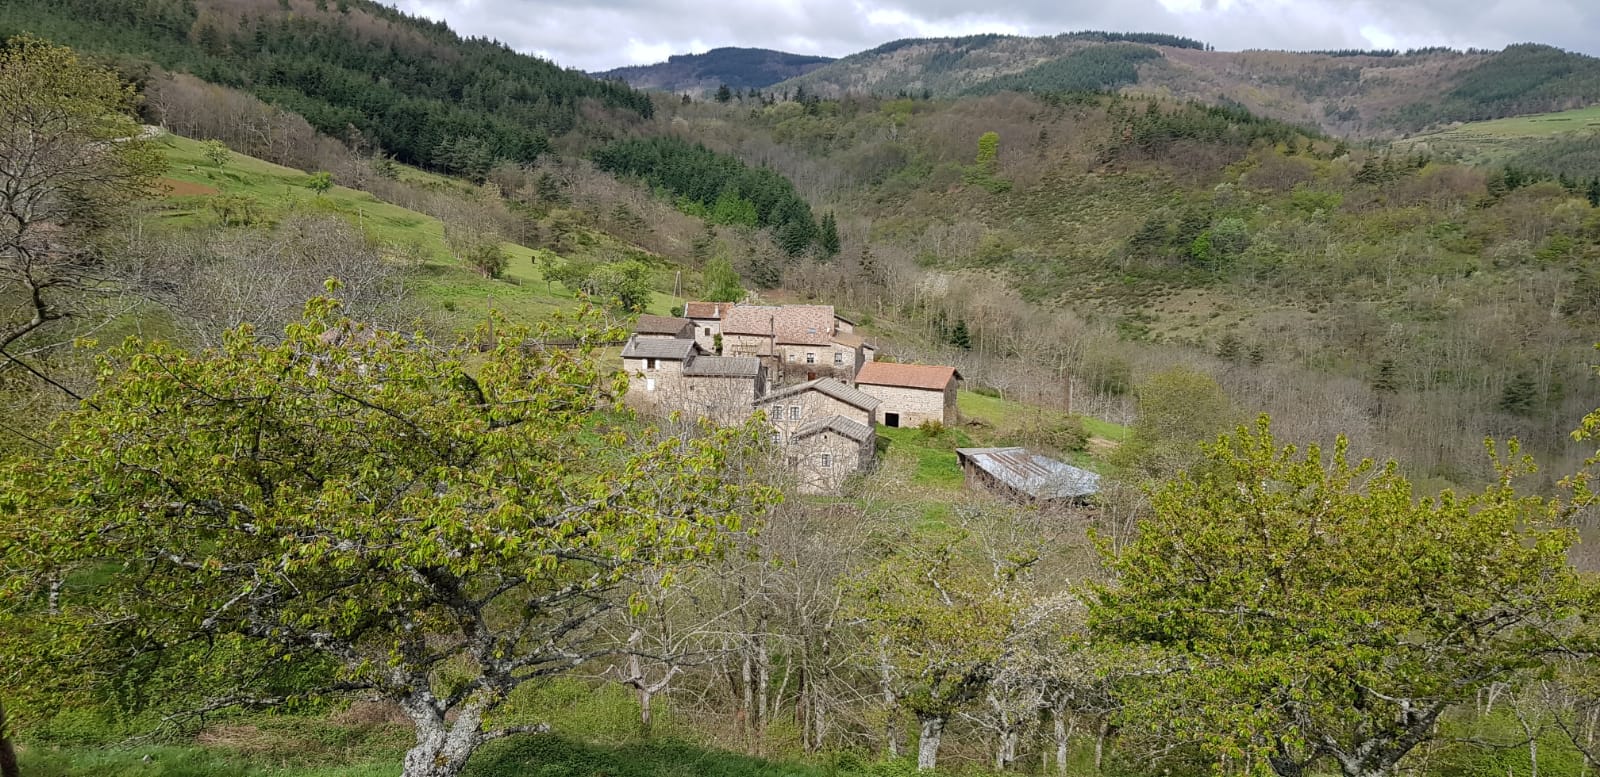 Admirez la splendeur des logements au sein de l'Ardèche, nichés dans un cadre naturel exceptionnel. Découvrez l'authenticité avec Les Échoppes de Longefaye, votre refuge de choix pour une expérience unique en pleine nature.